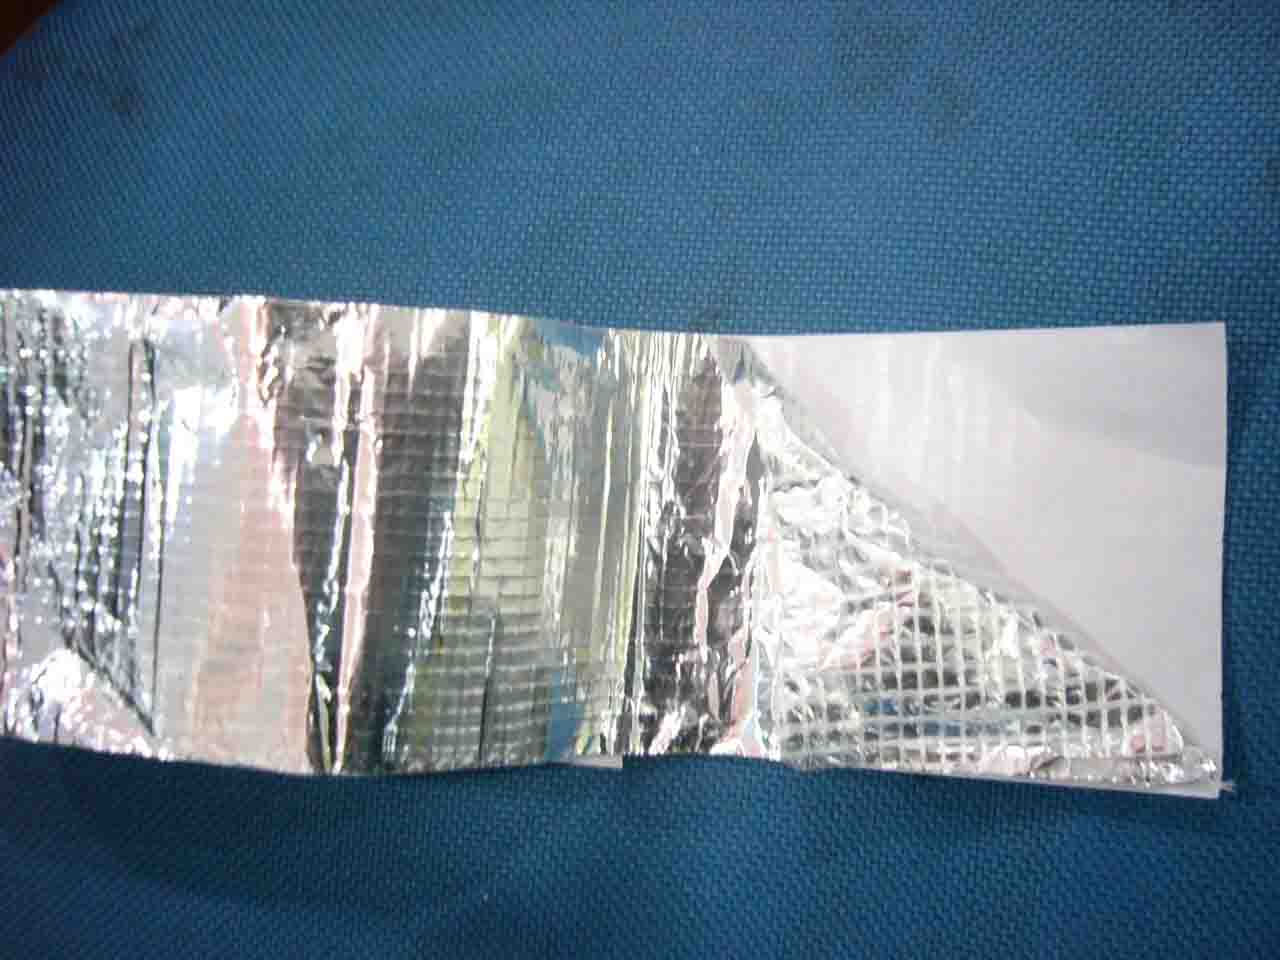  Aluminum Tape With Glass (Алюминиевая лента стекла)